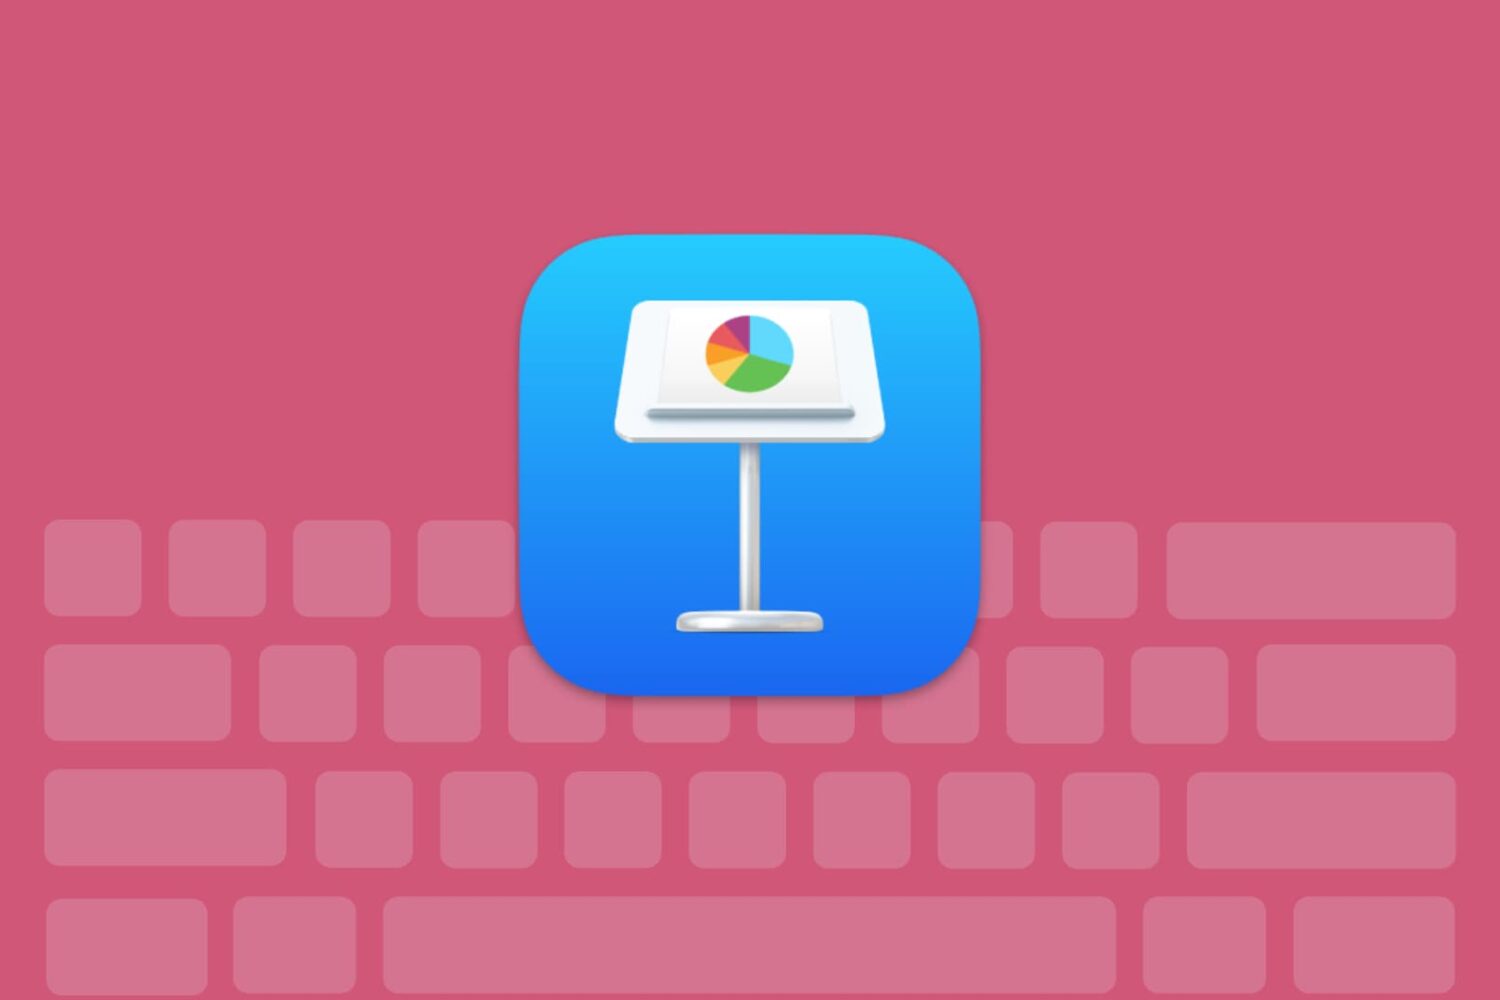 Keynote keyboard shortcuts for Mac